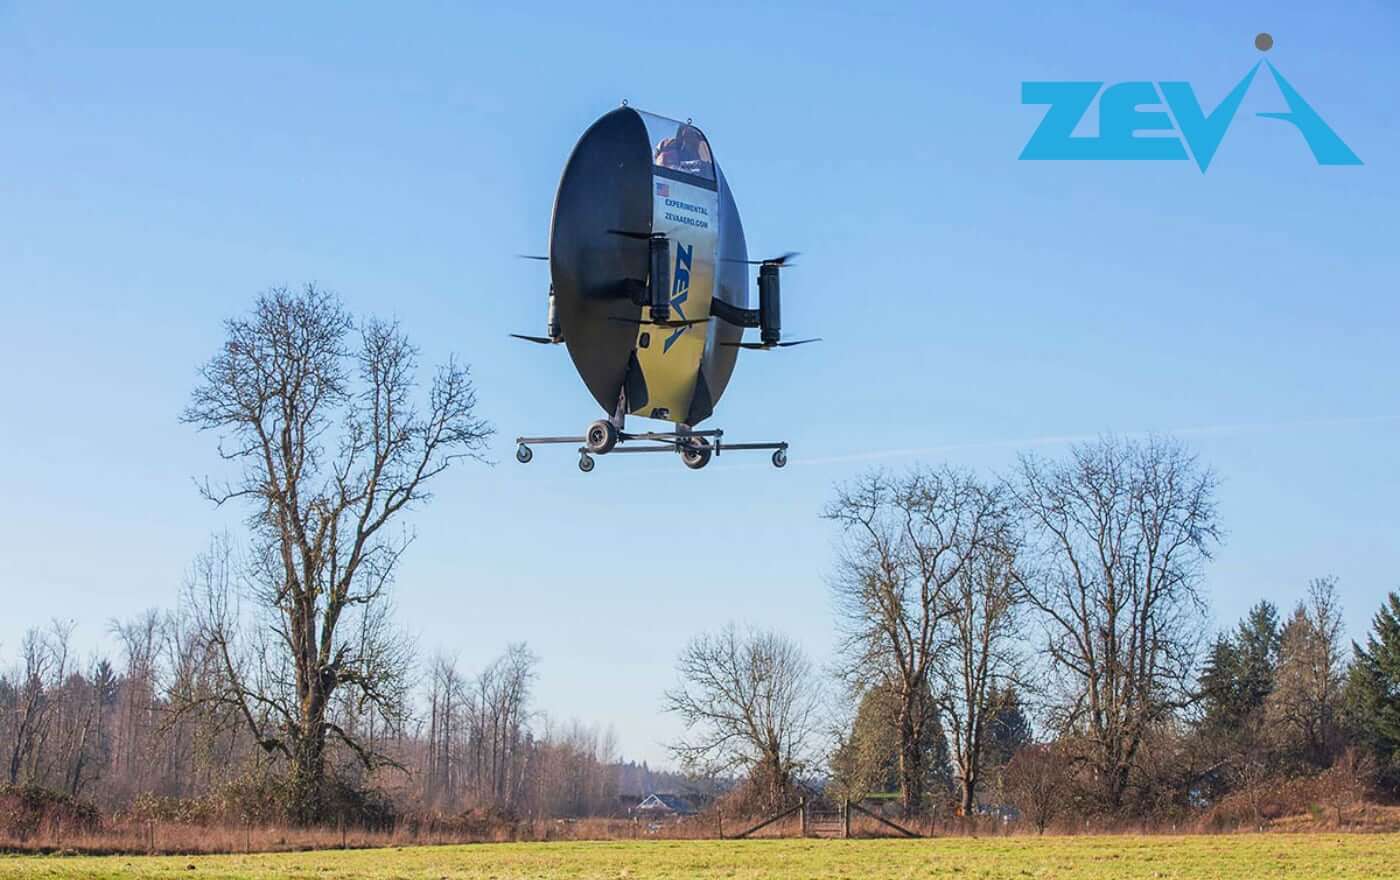 Lot testowy Zero eVTOL firmy Zeva